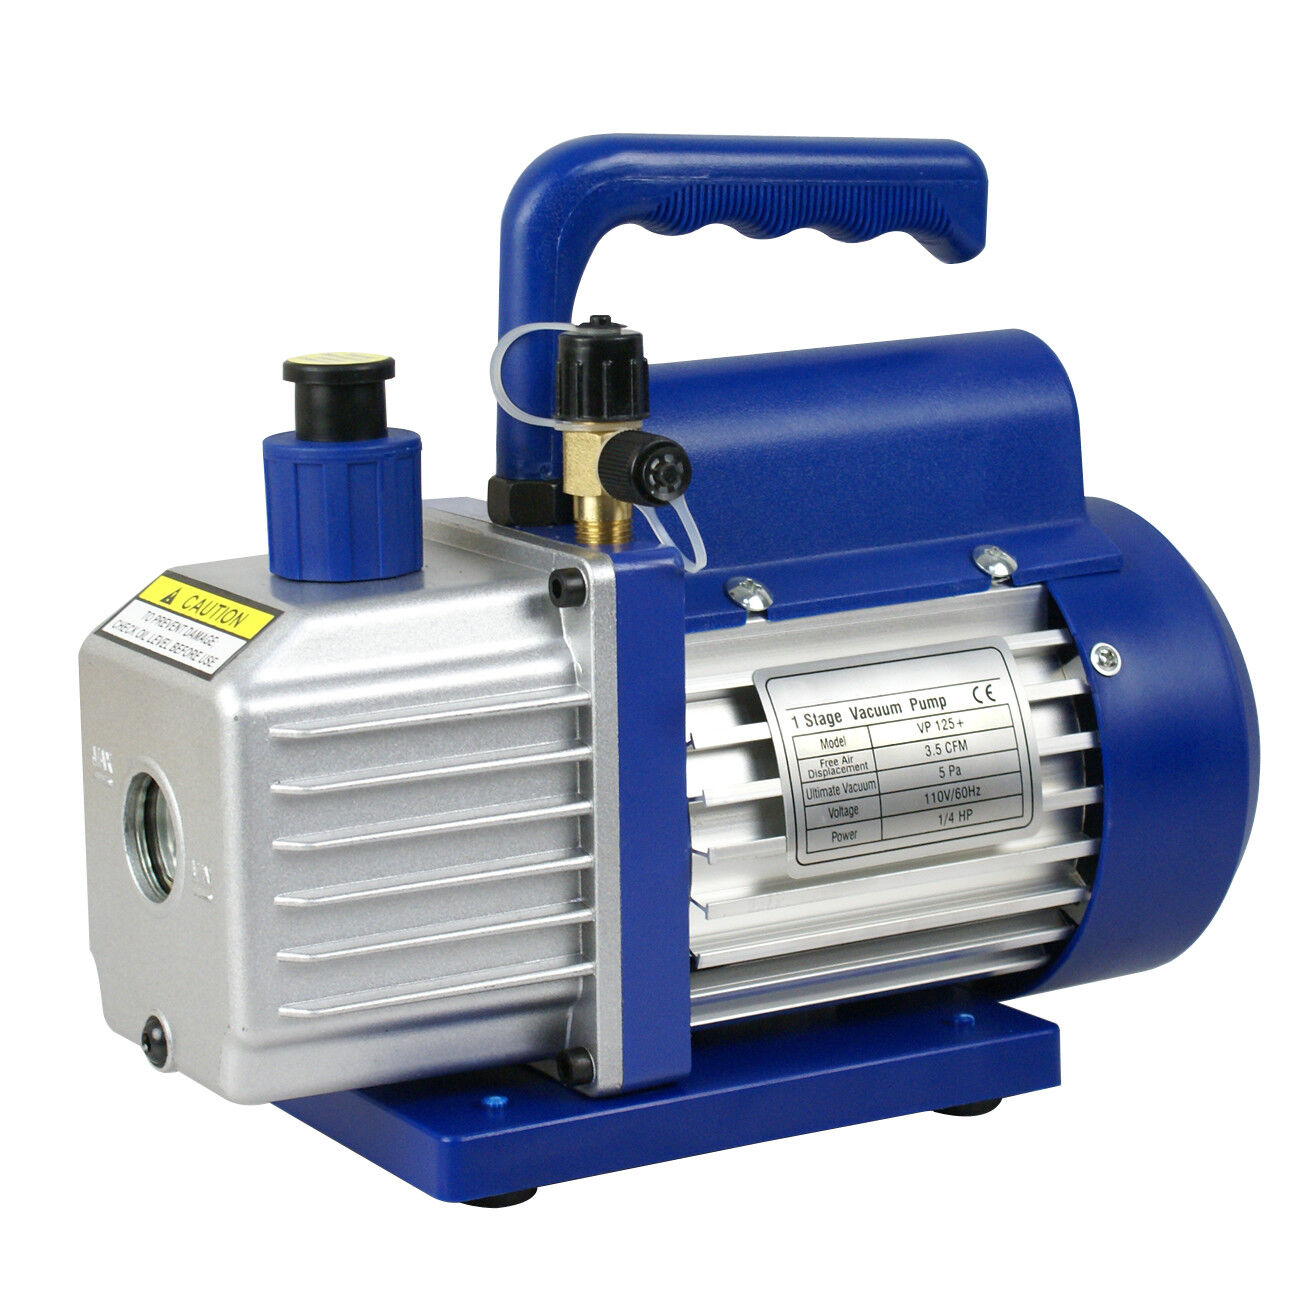 3,5CFM 1/4HP Rotary Vane Deep Vacuum Pump HVAC AC Air Tool R410a R134 W/Free Oil